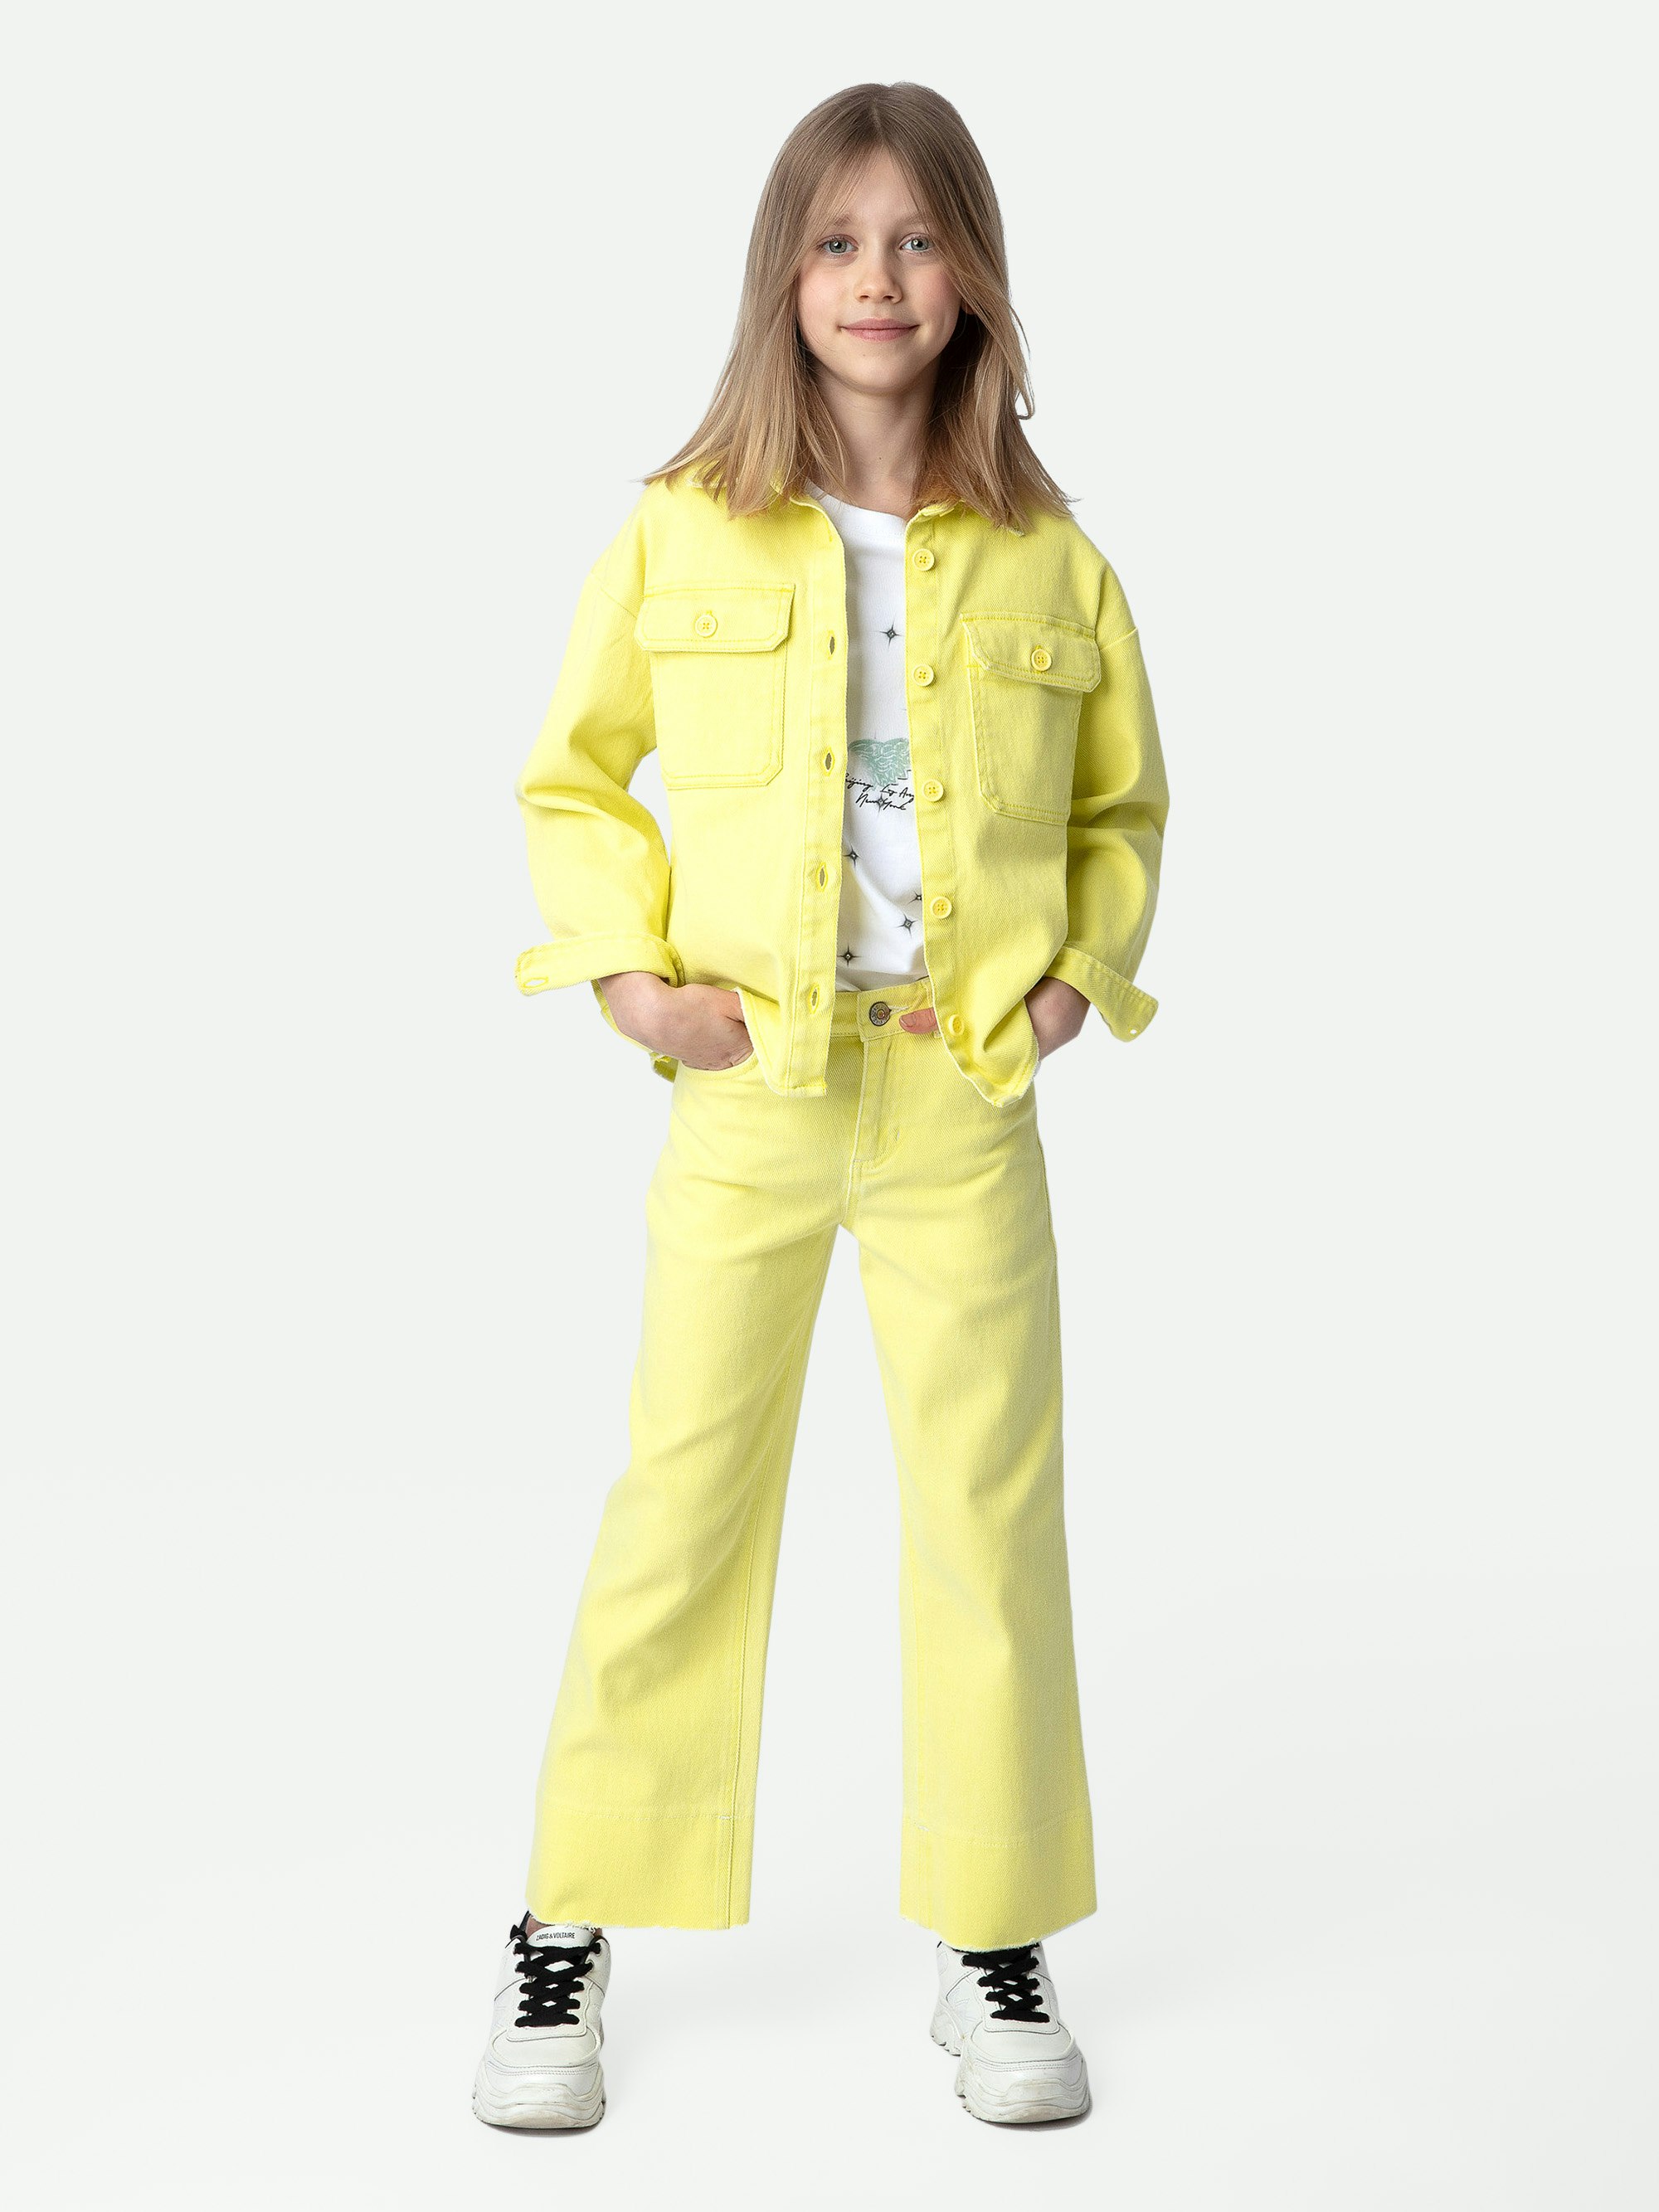 Giacca Timmy Ragazza - Giacca da ragazza in twill di cotone gialla decorata con messaggio "Amour" sul retro.